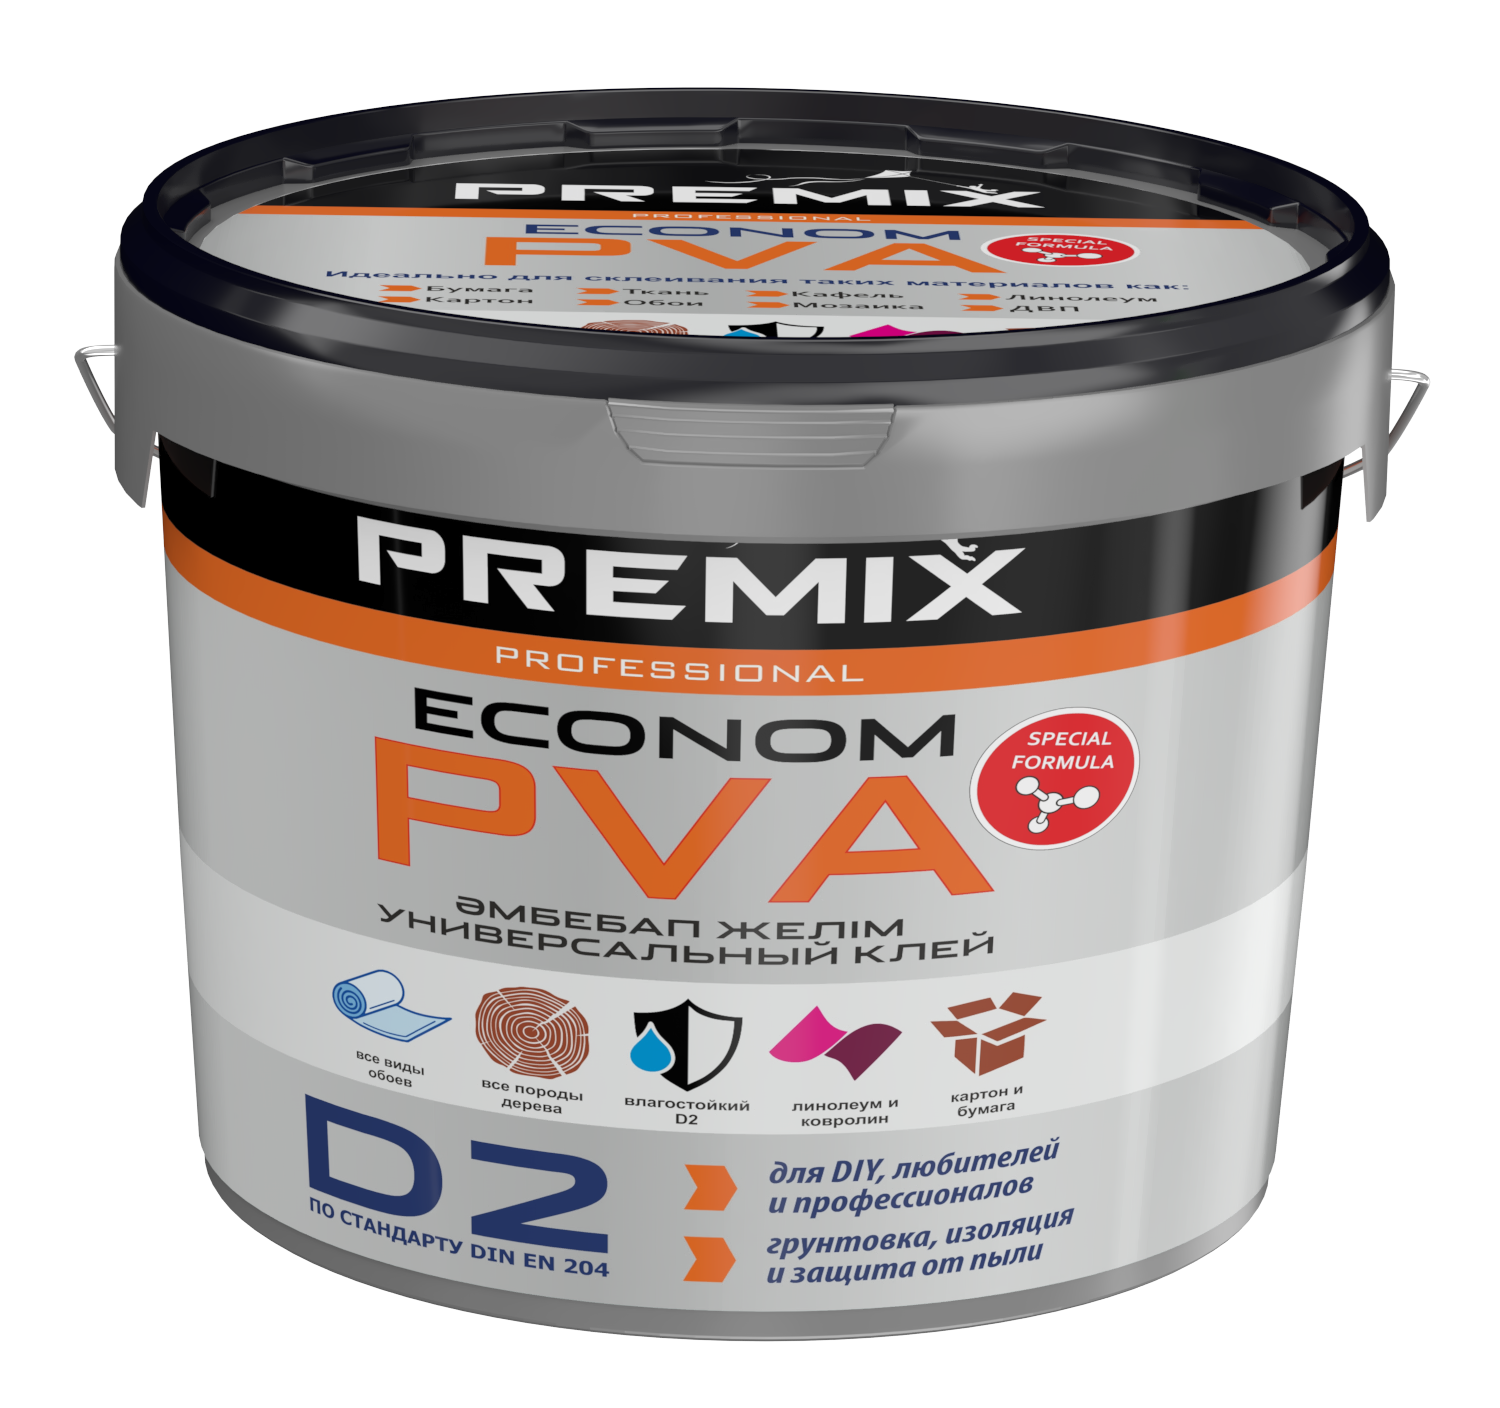 Premix клей PVA Econom универсальный клей (0,8кг)